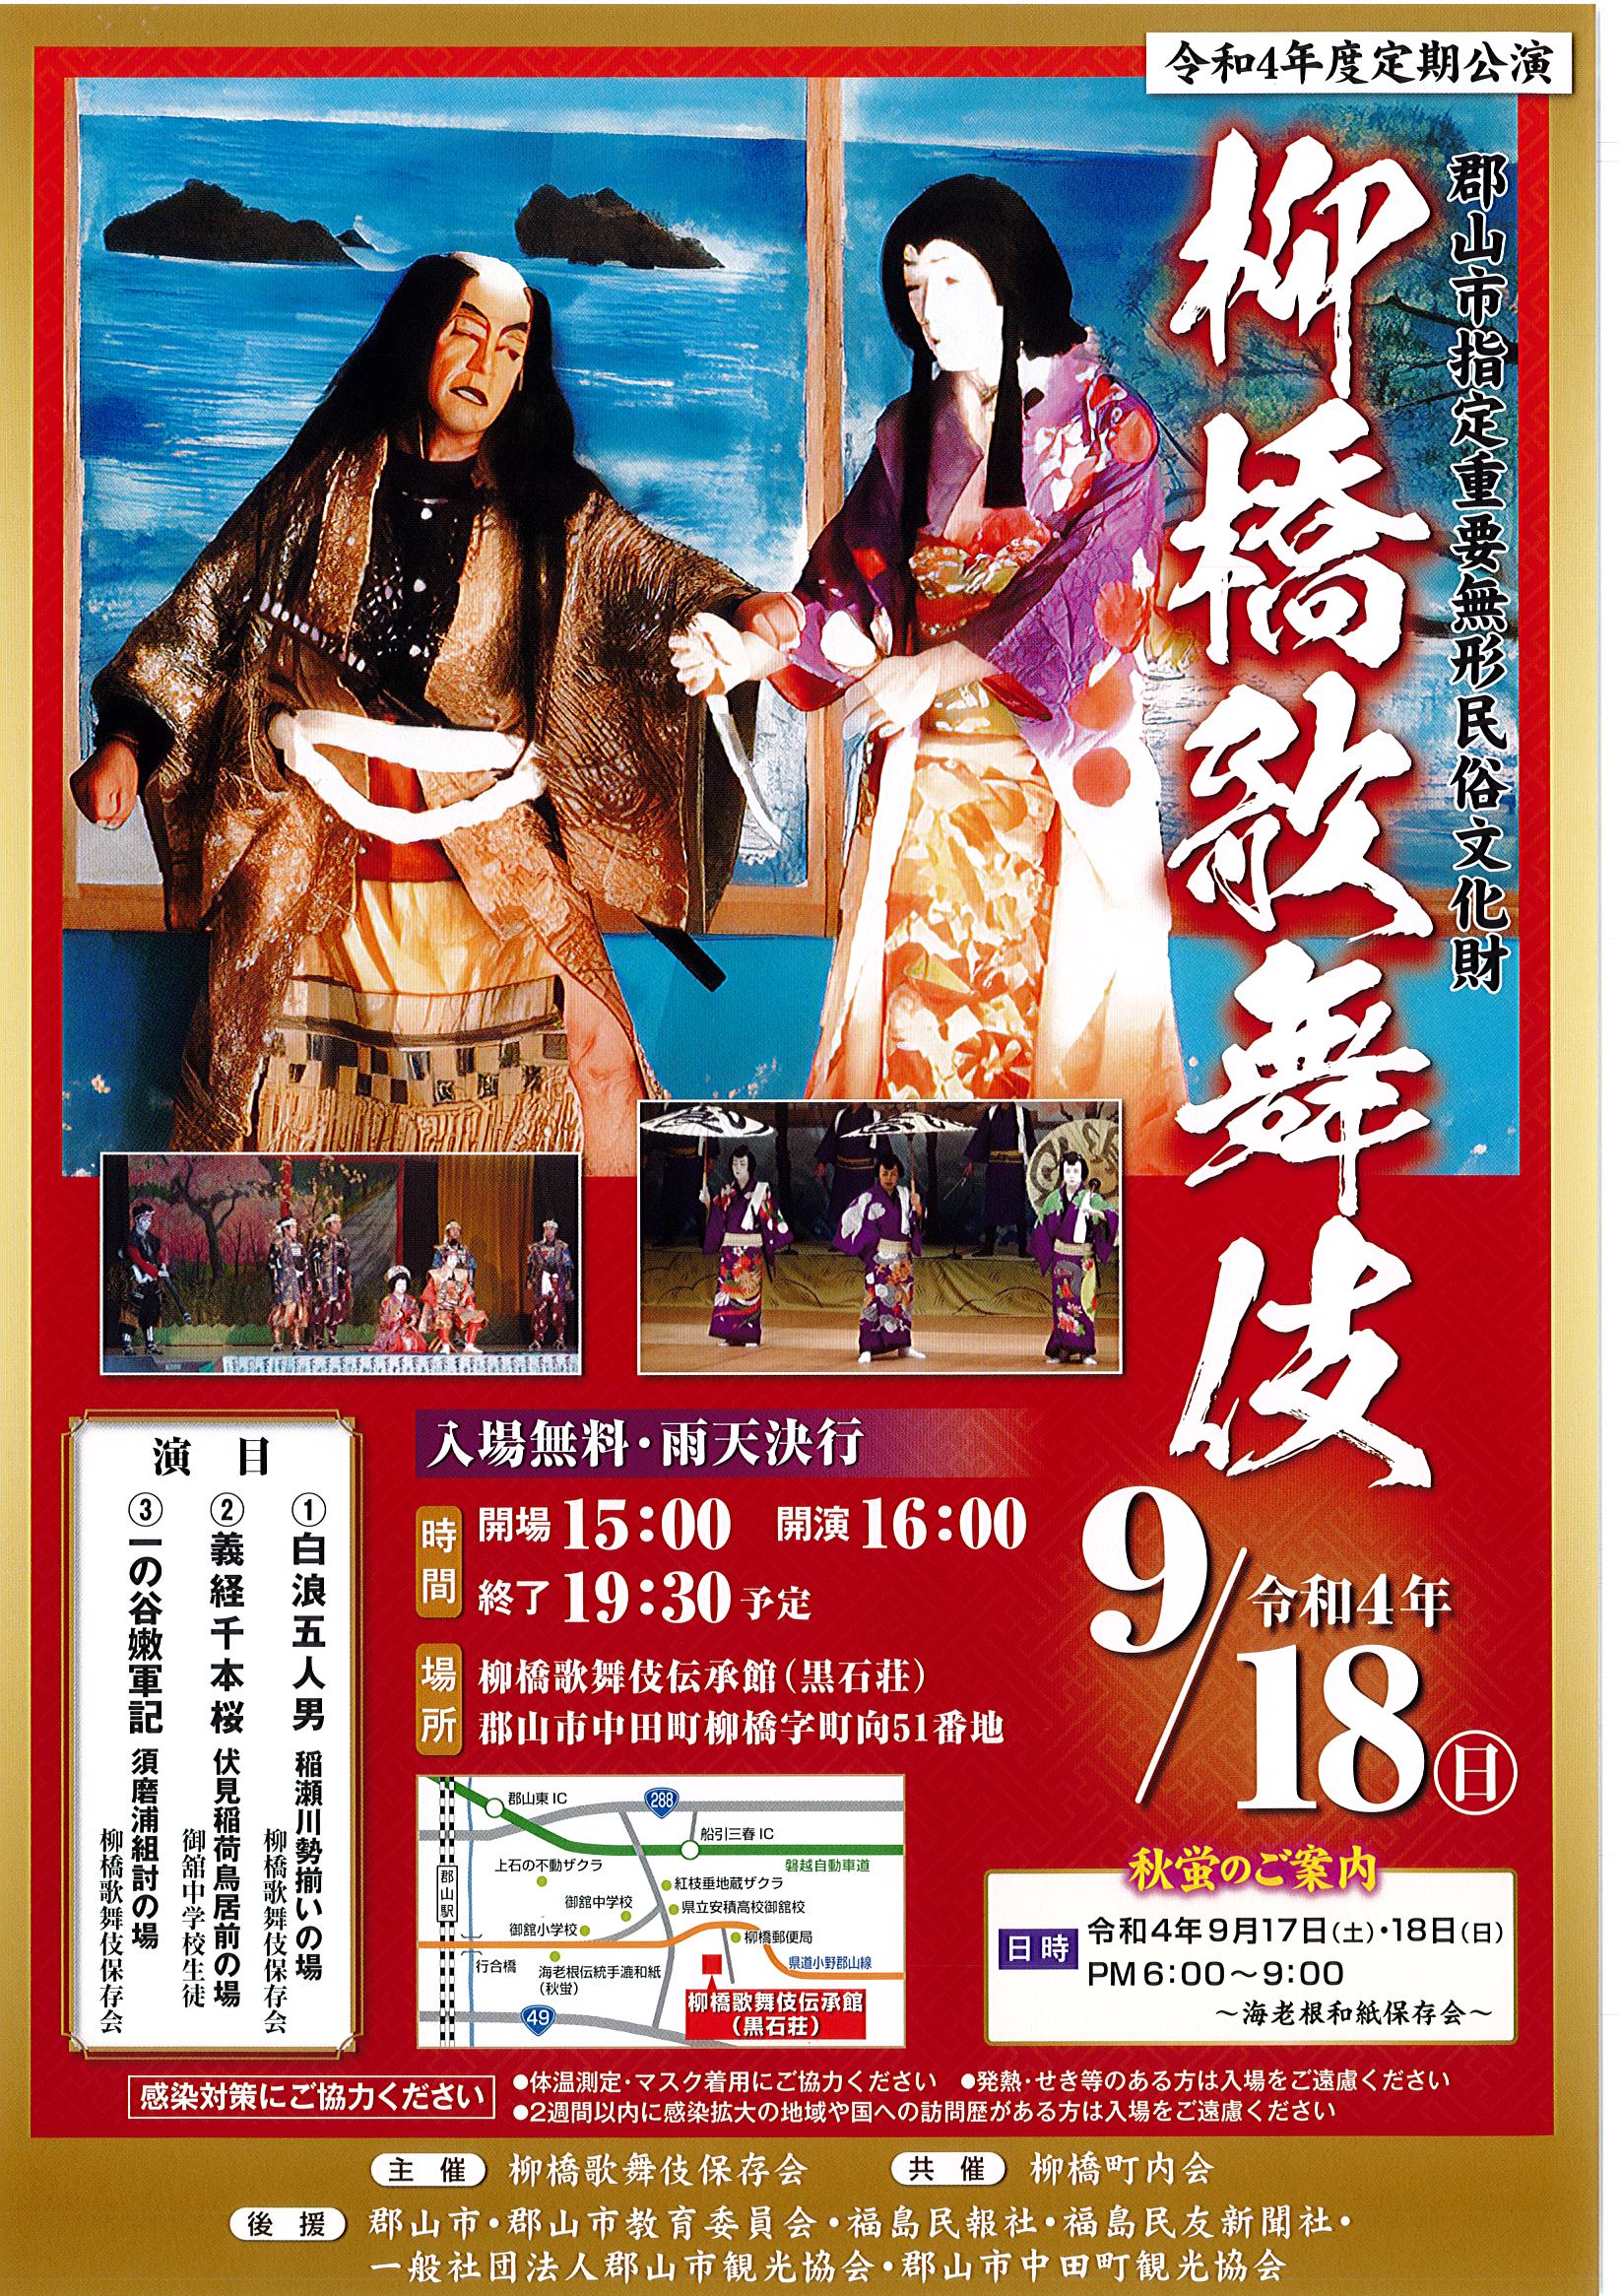 9月18日 柳橋歌舞伎が開催されます！